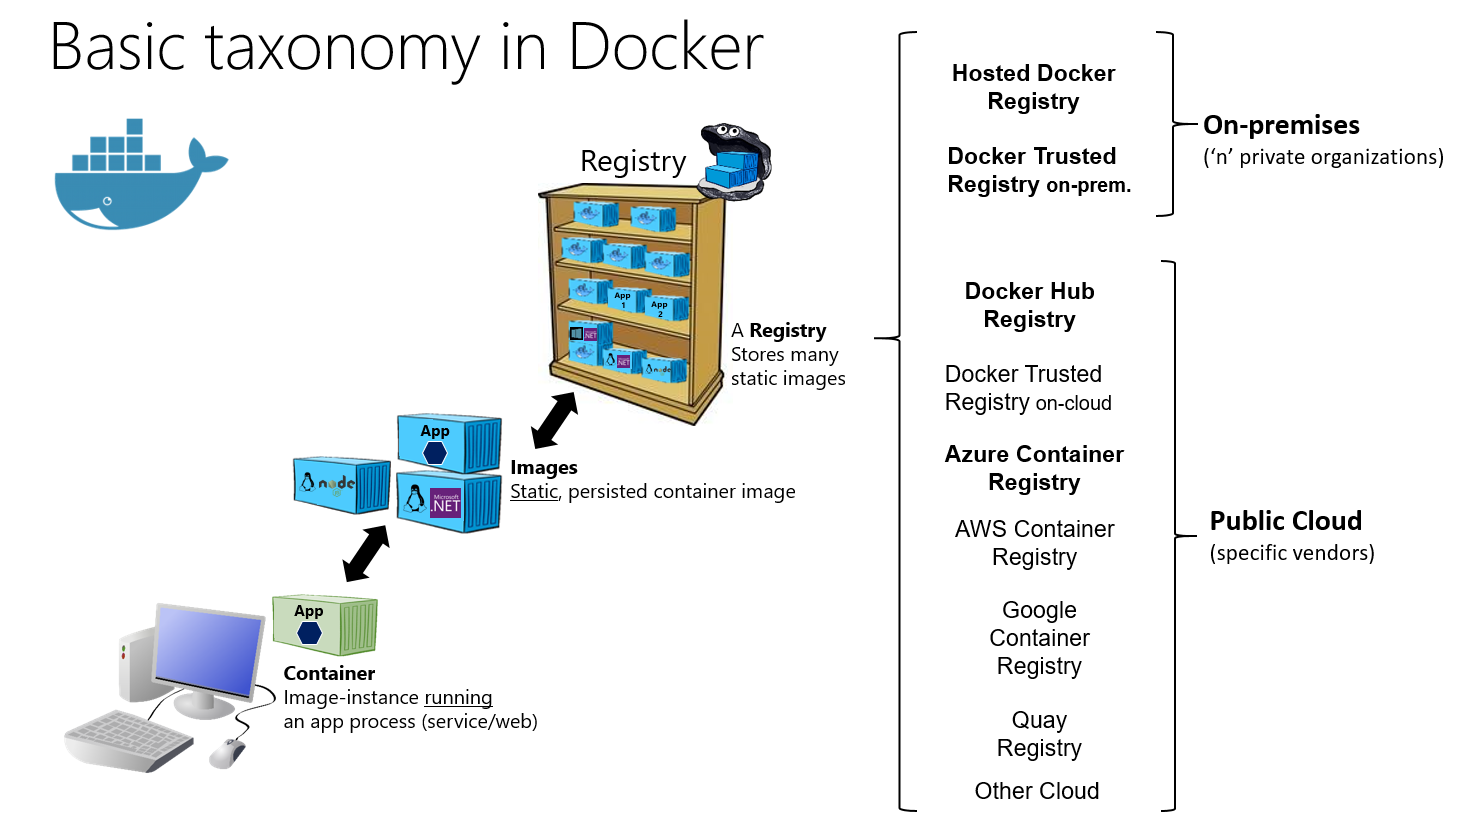 Infografis taksonomi Docker dasar untuk kontainer, gambar, dan registri